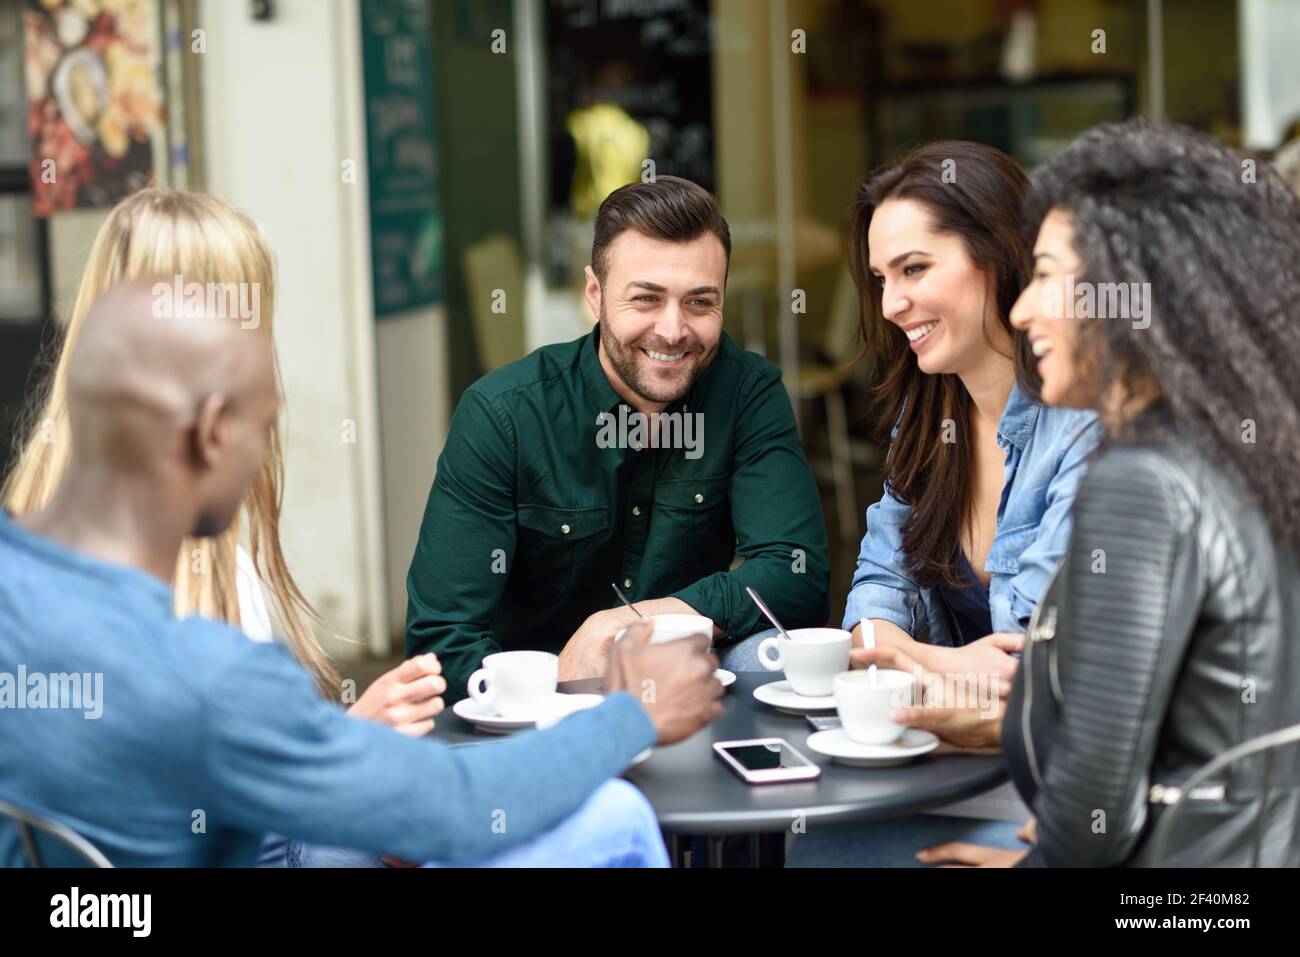 Multirassische Gruppe von fünf Freunden mit einem Kaffee zusammen. Drei Frauen und zwei Männer im Café, reden, lachen und genießen ihre Zeit. Lifestyle- und Freundschaftskonzepte mit echten Menschen-Modellen. Multirassische Gruppe von fünf Freunden mit einem Kaffee zusammen Stockfoto